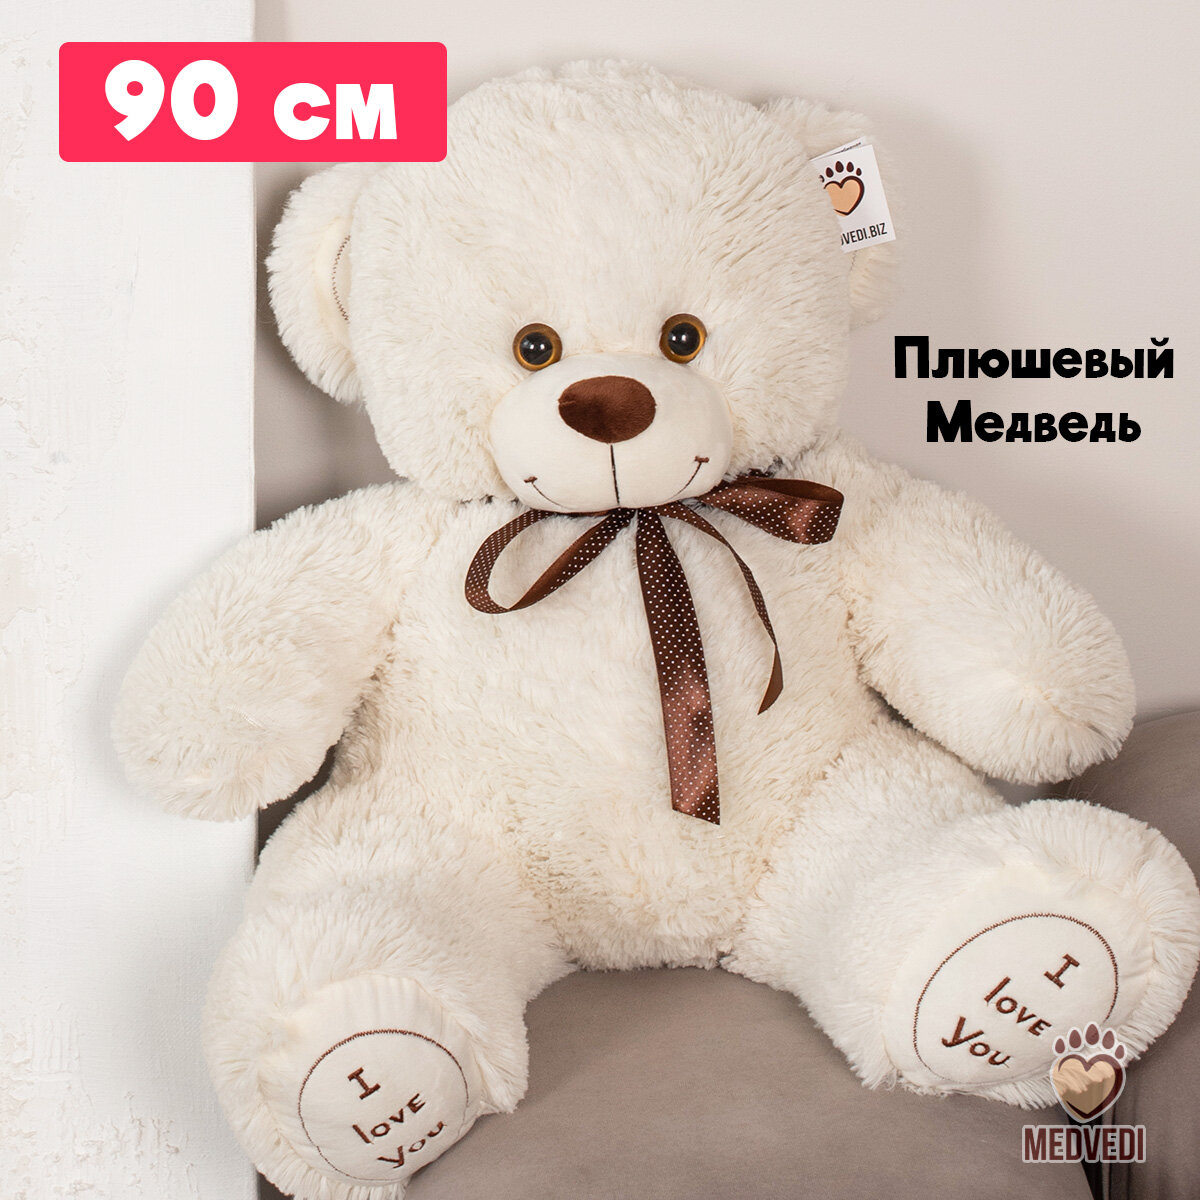 Мягкая игрушка большой плюшевый медведь 90 см I Love You / Плюшевый мишка большой 90 см / Подарок для ребёнка девушки подруге на новый год